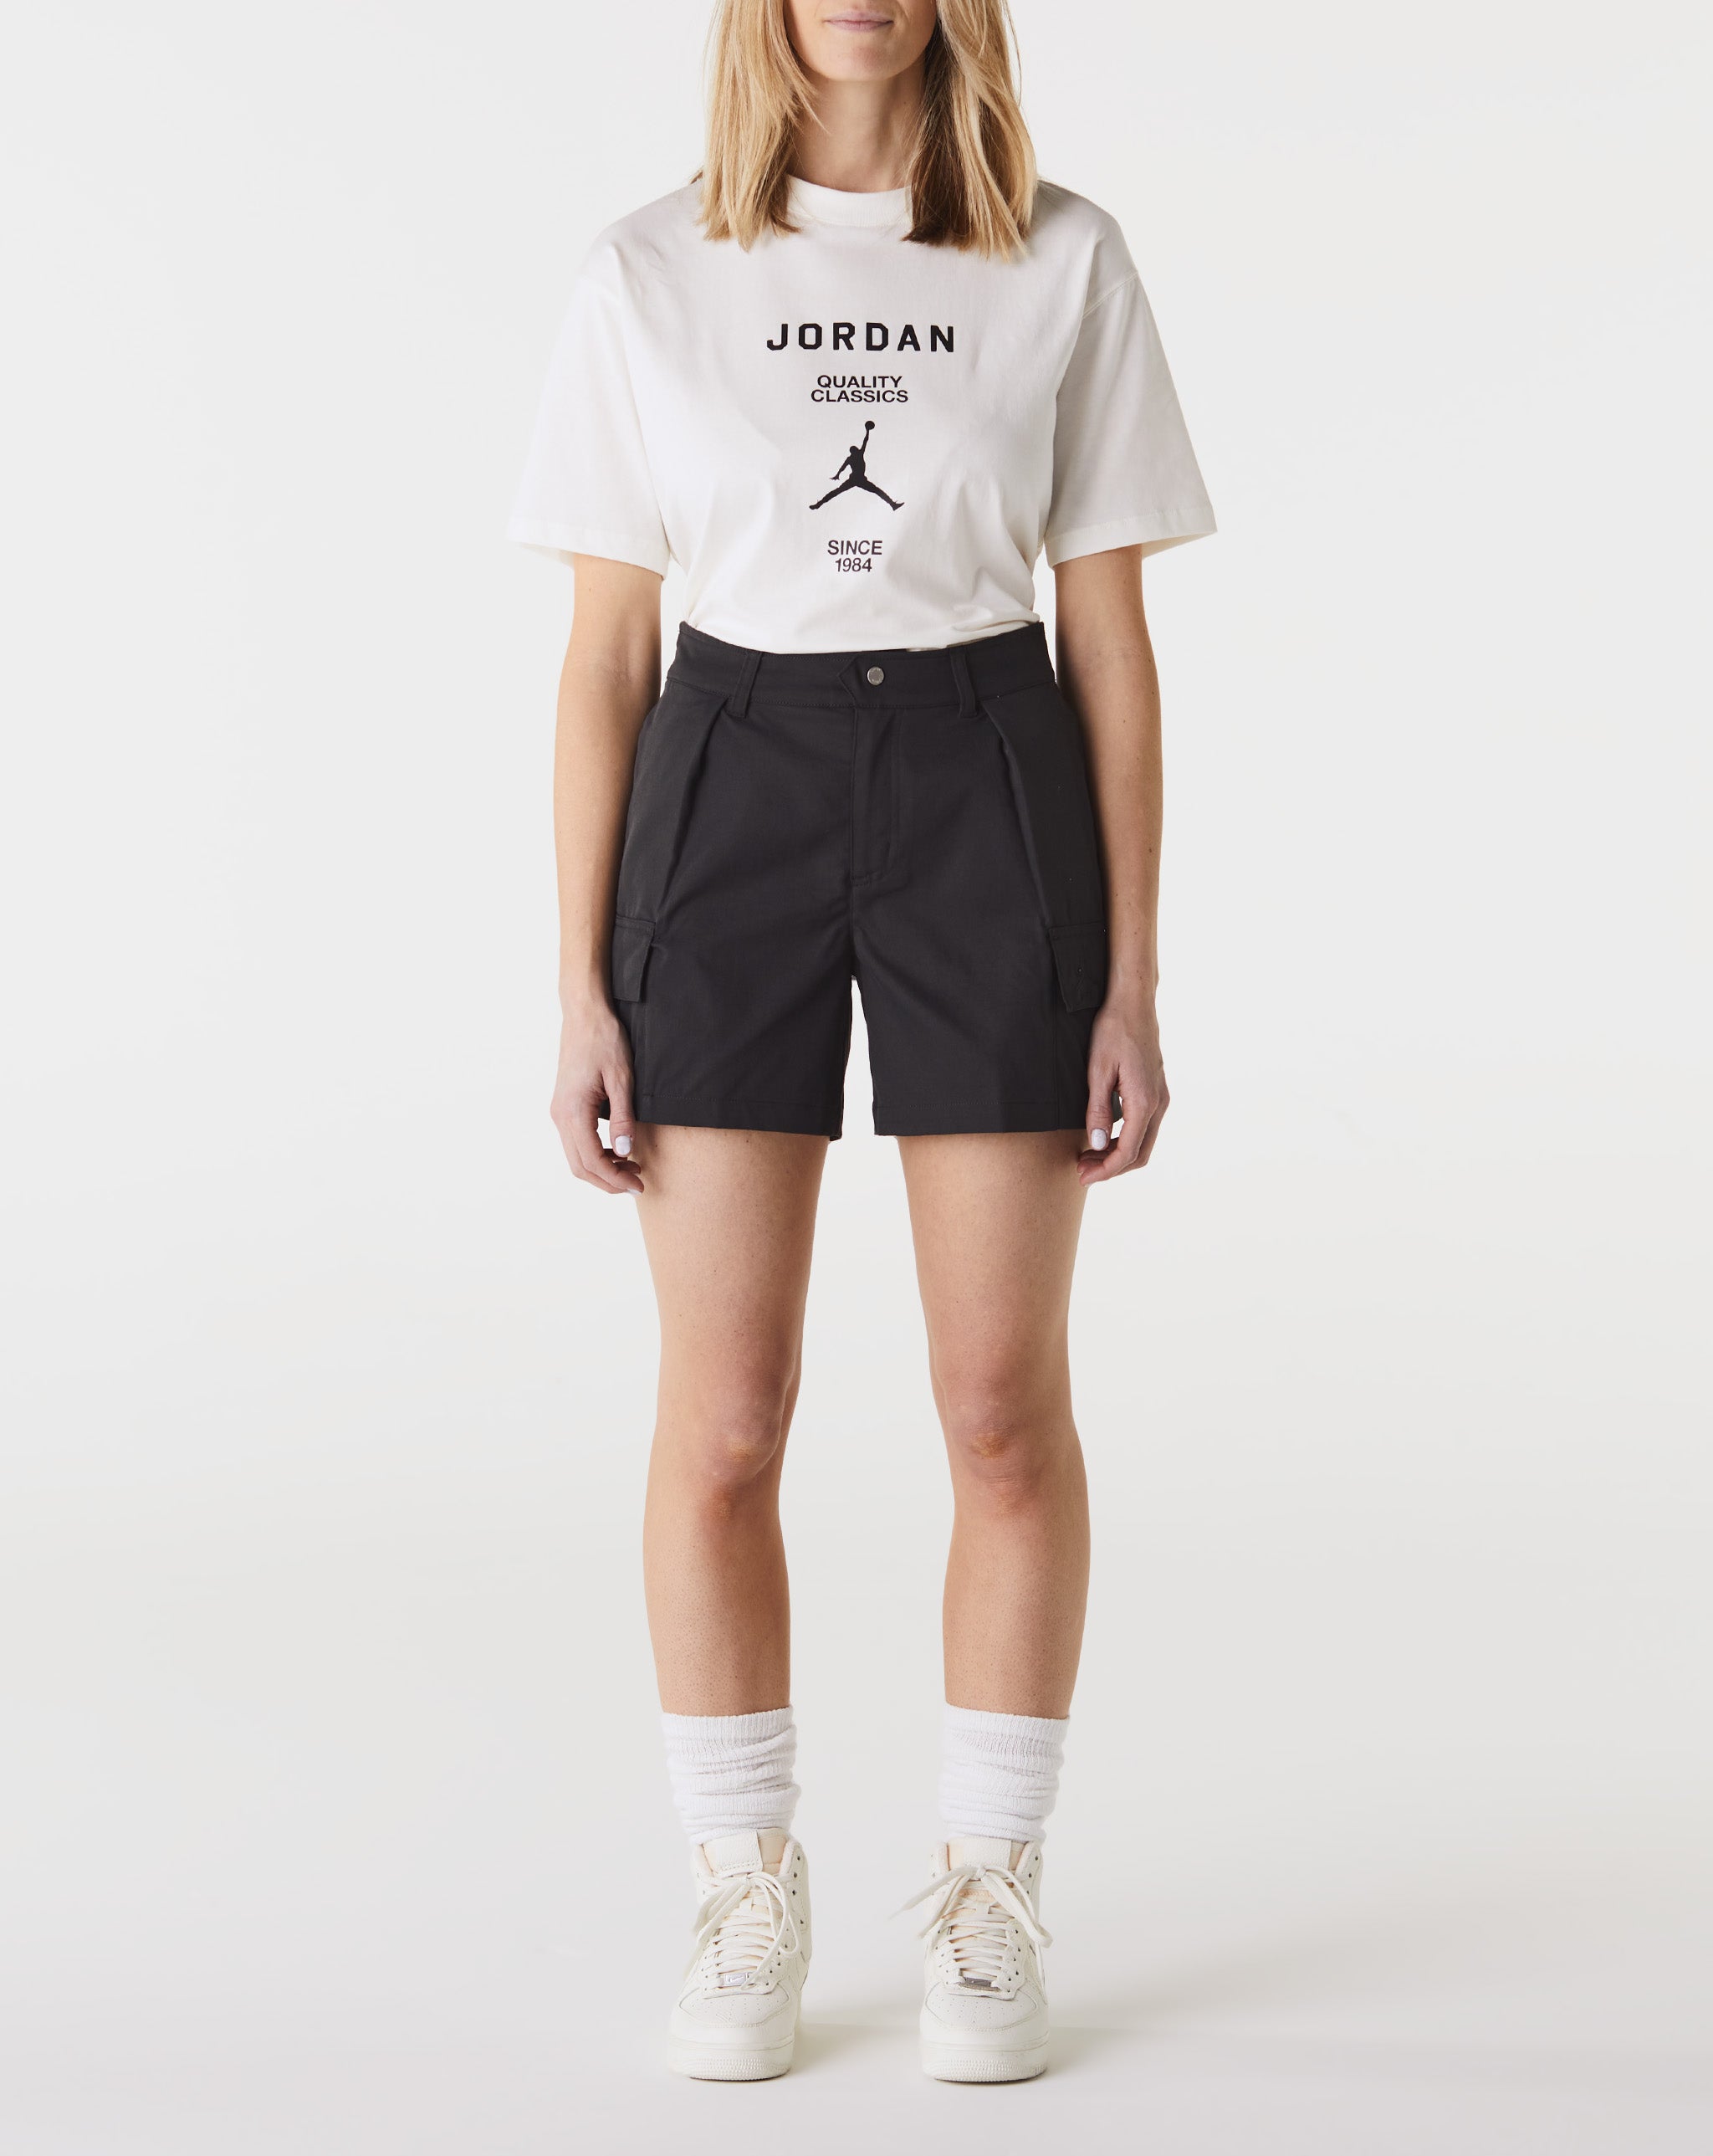 Air jordan the Women's Chicago Shorts  - Cheap 127-0 Jordan outlet